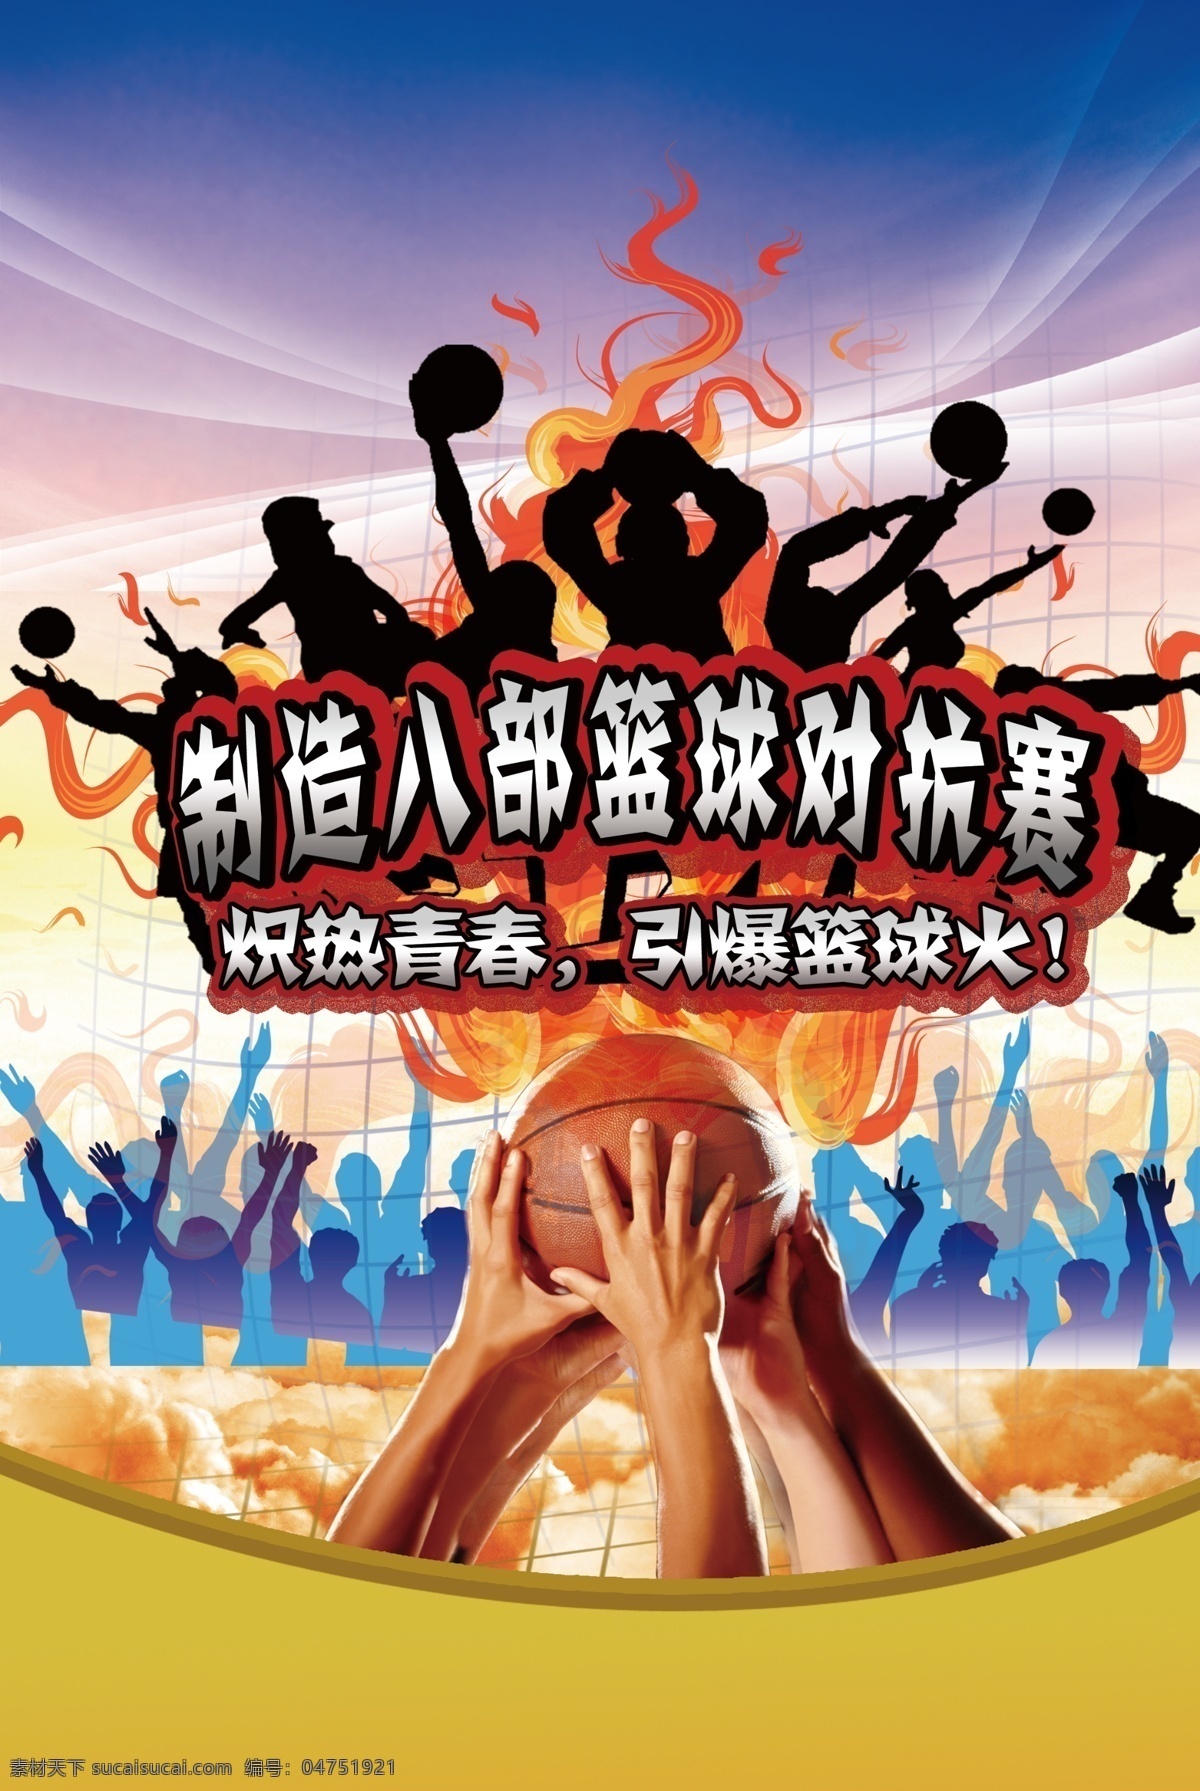 篮球比赛 篮球赛海报 篮球海报 篮球 篮球对抗赛 海报